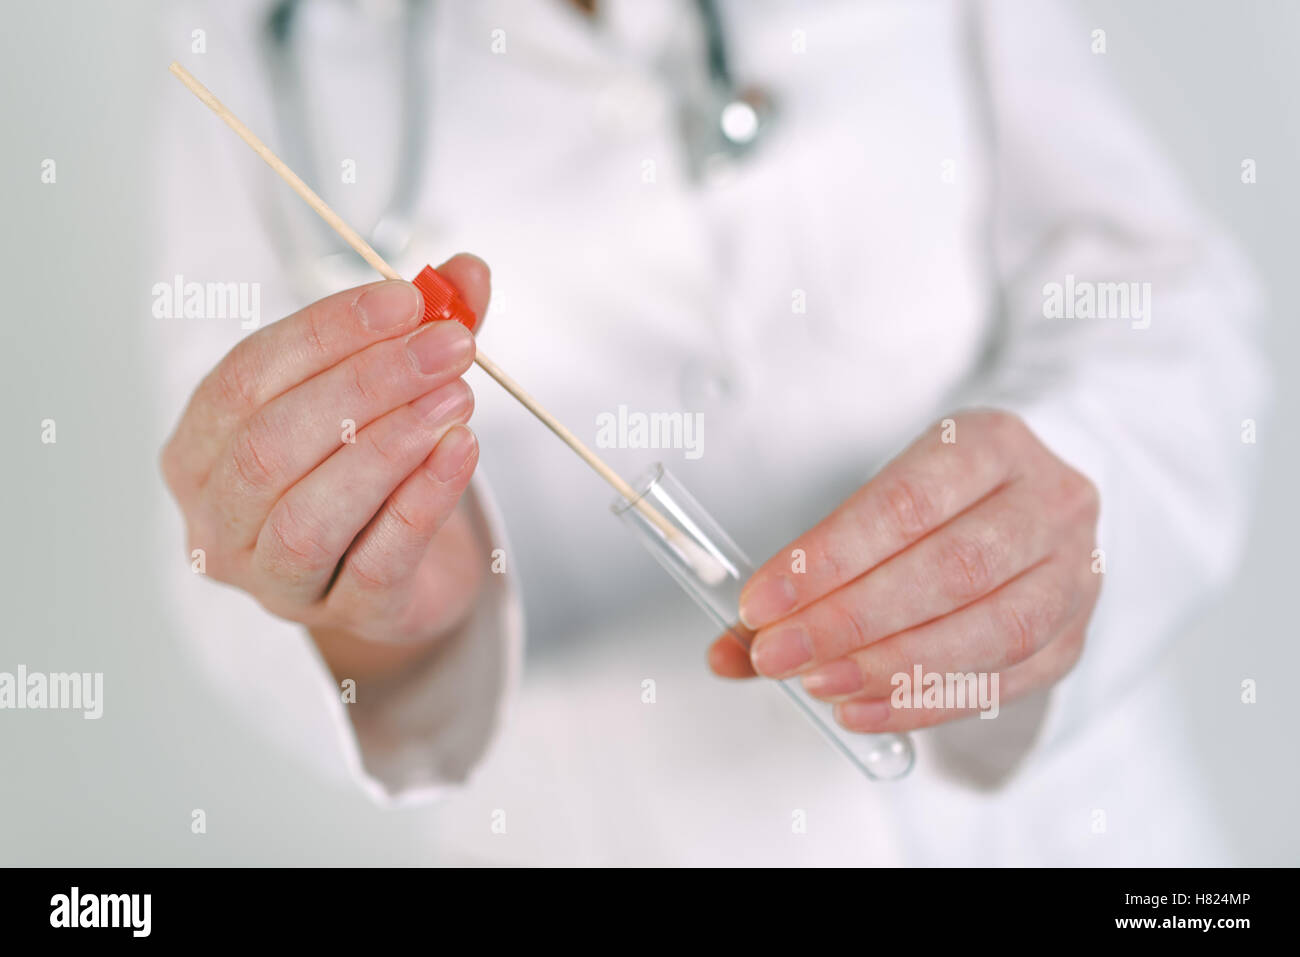 Weibliche forensische Techniker sammeln von biologischen Proben in DNA-Röhre, Nahaufnahme von Womans Hände in weißer uniform mit gesampelten co Stockfoto